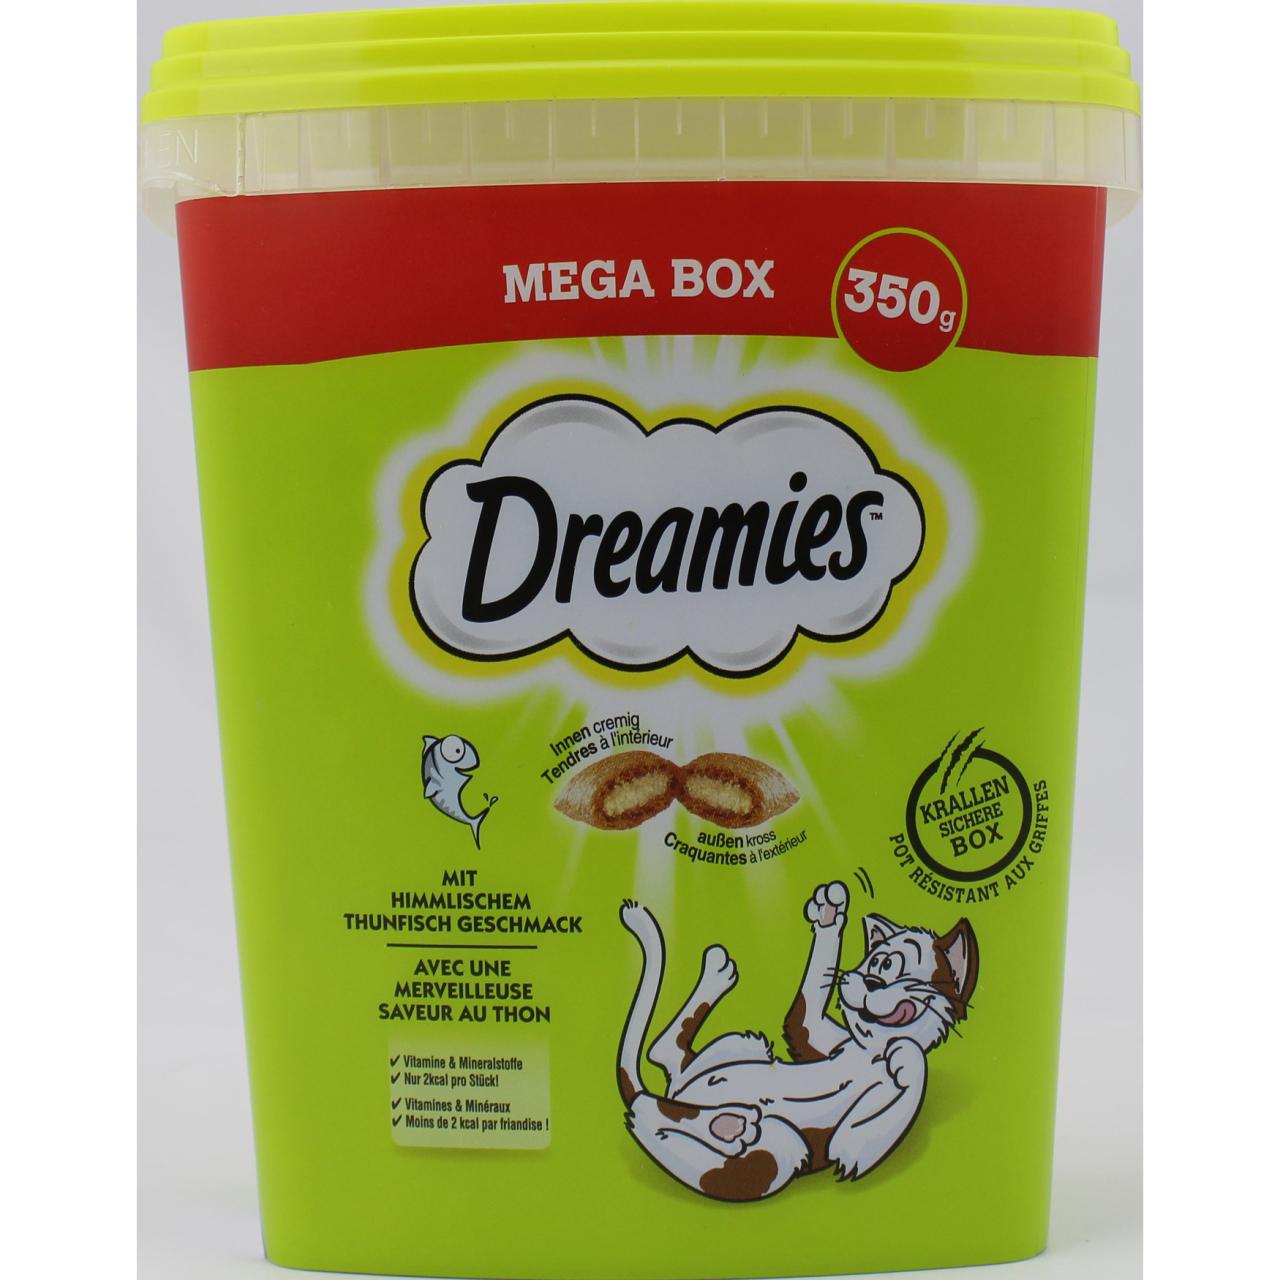 Dreamies Mega Box mit himmlischem Thunfisch Geschmack 350g